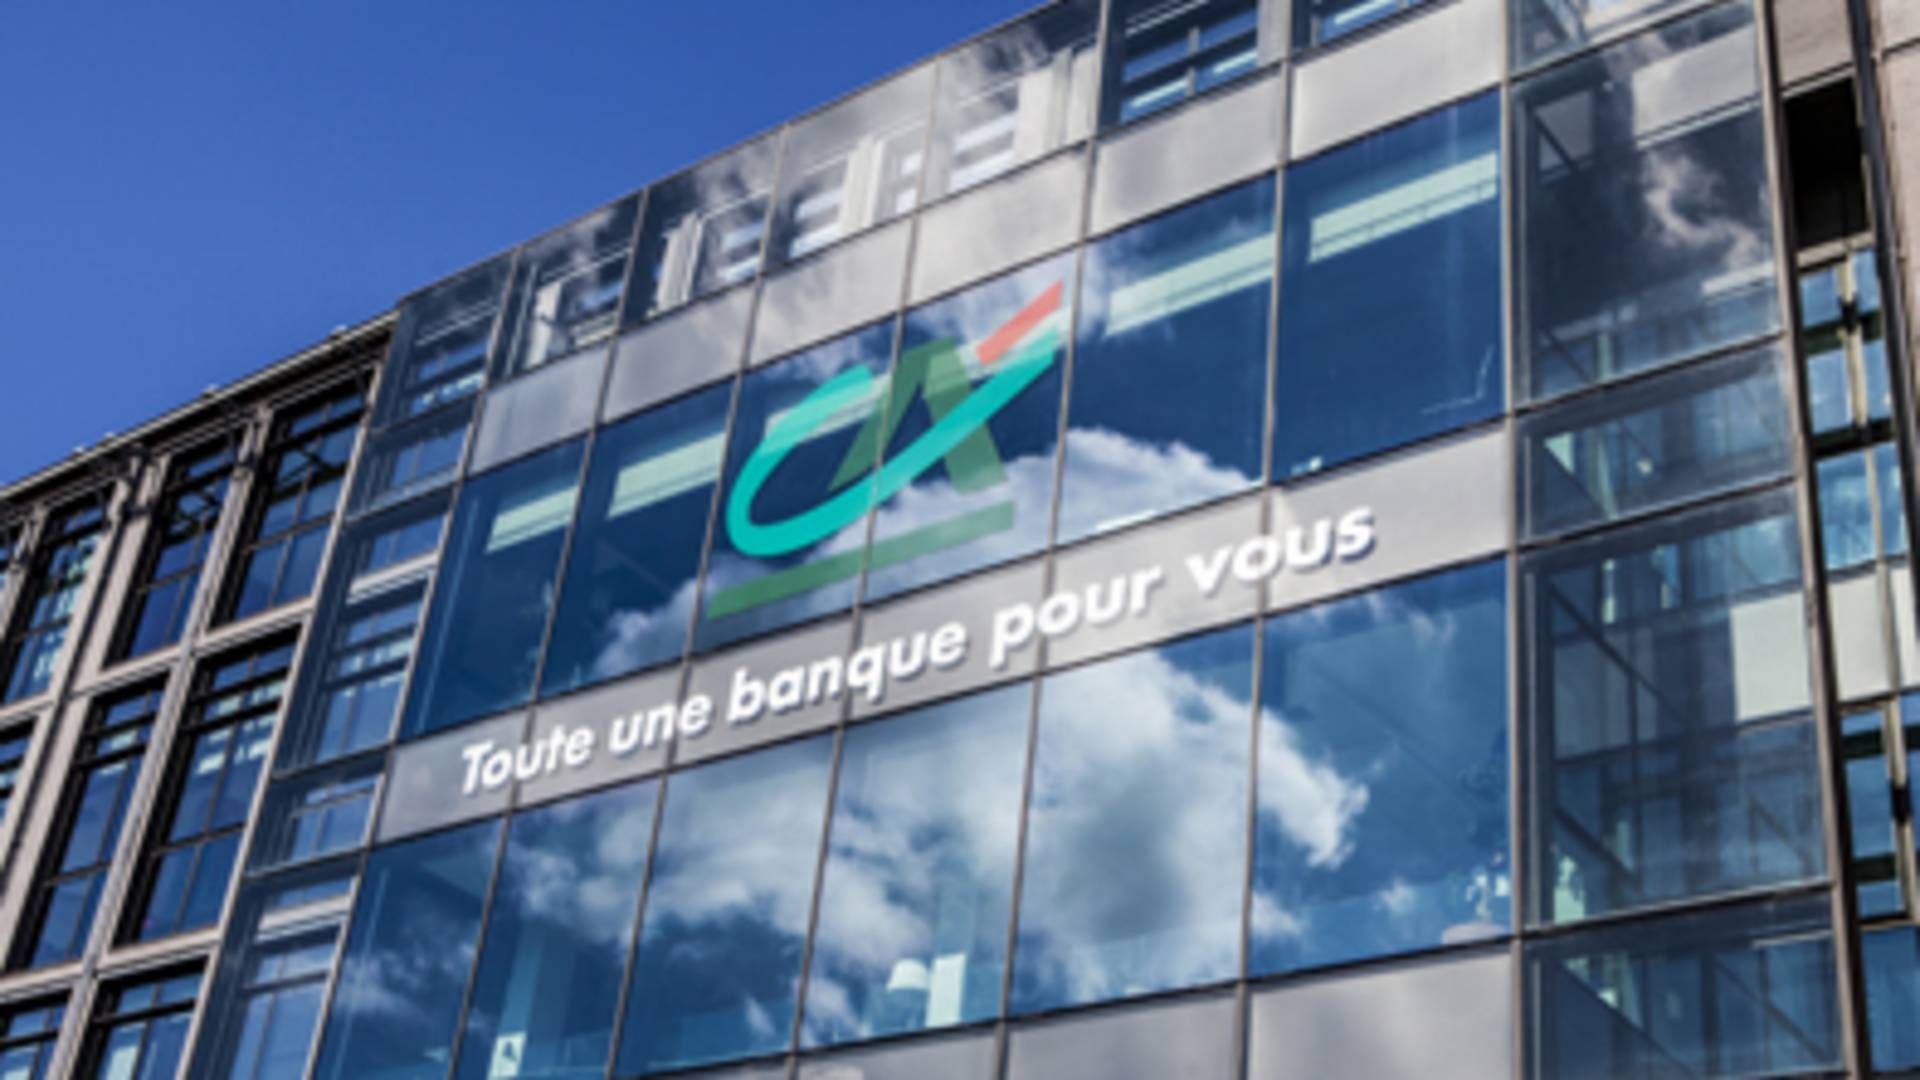 Crédit Agricole tjente næsten 2 mia. euro i andet kvartal. | Foto: Crédit Agricole/PR